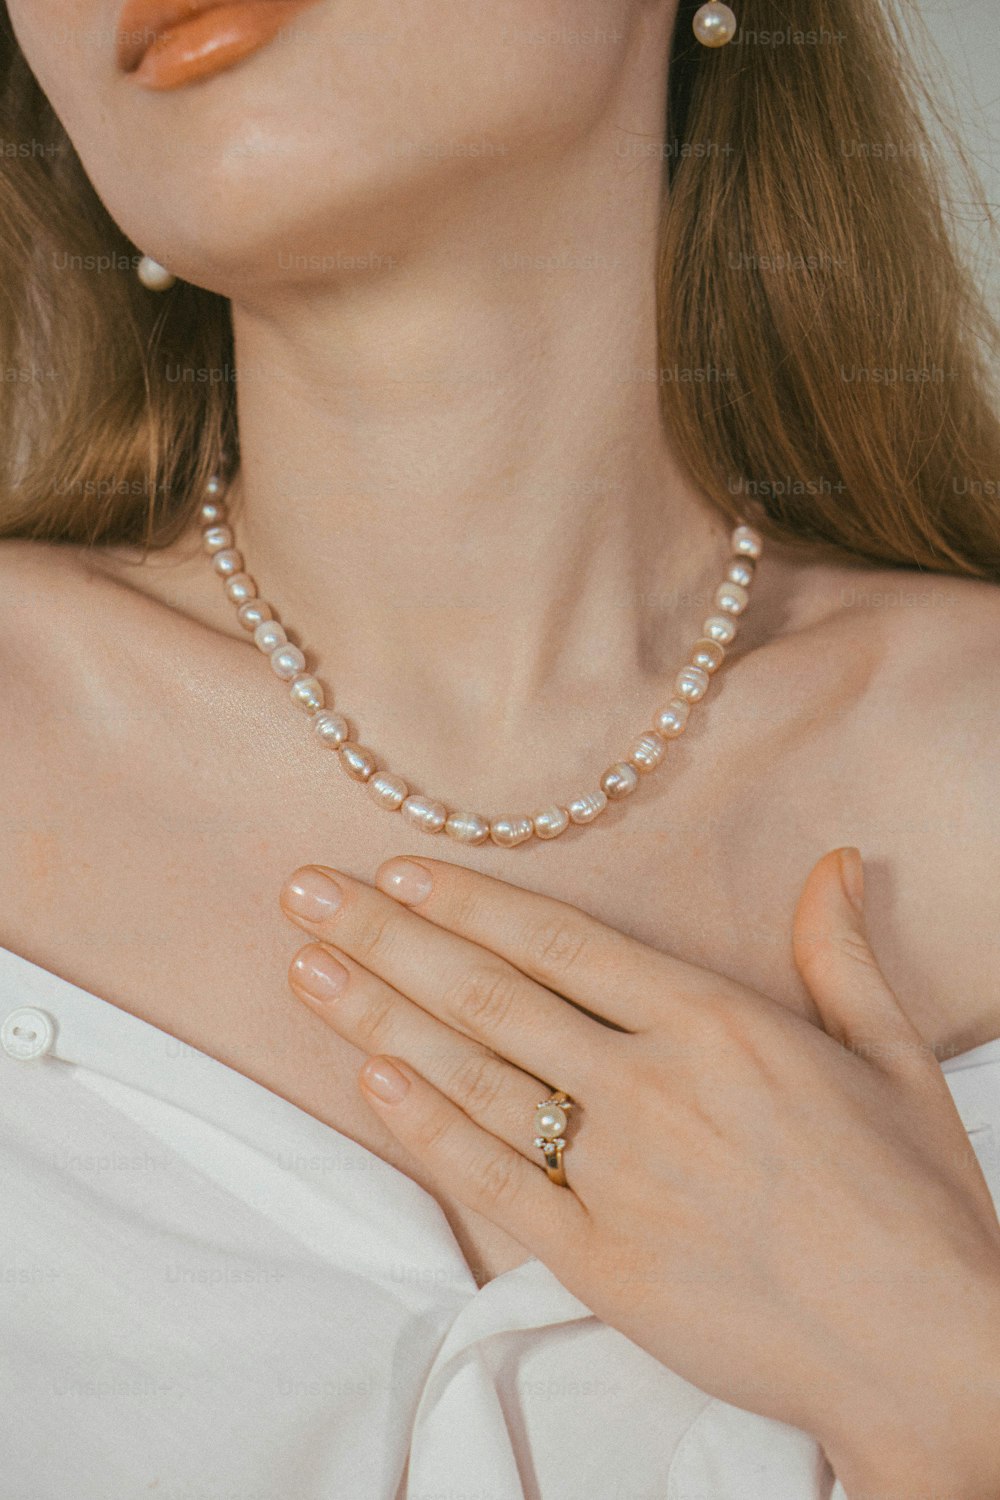 une femme portant un collier de perles et une bague